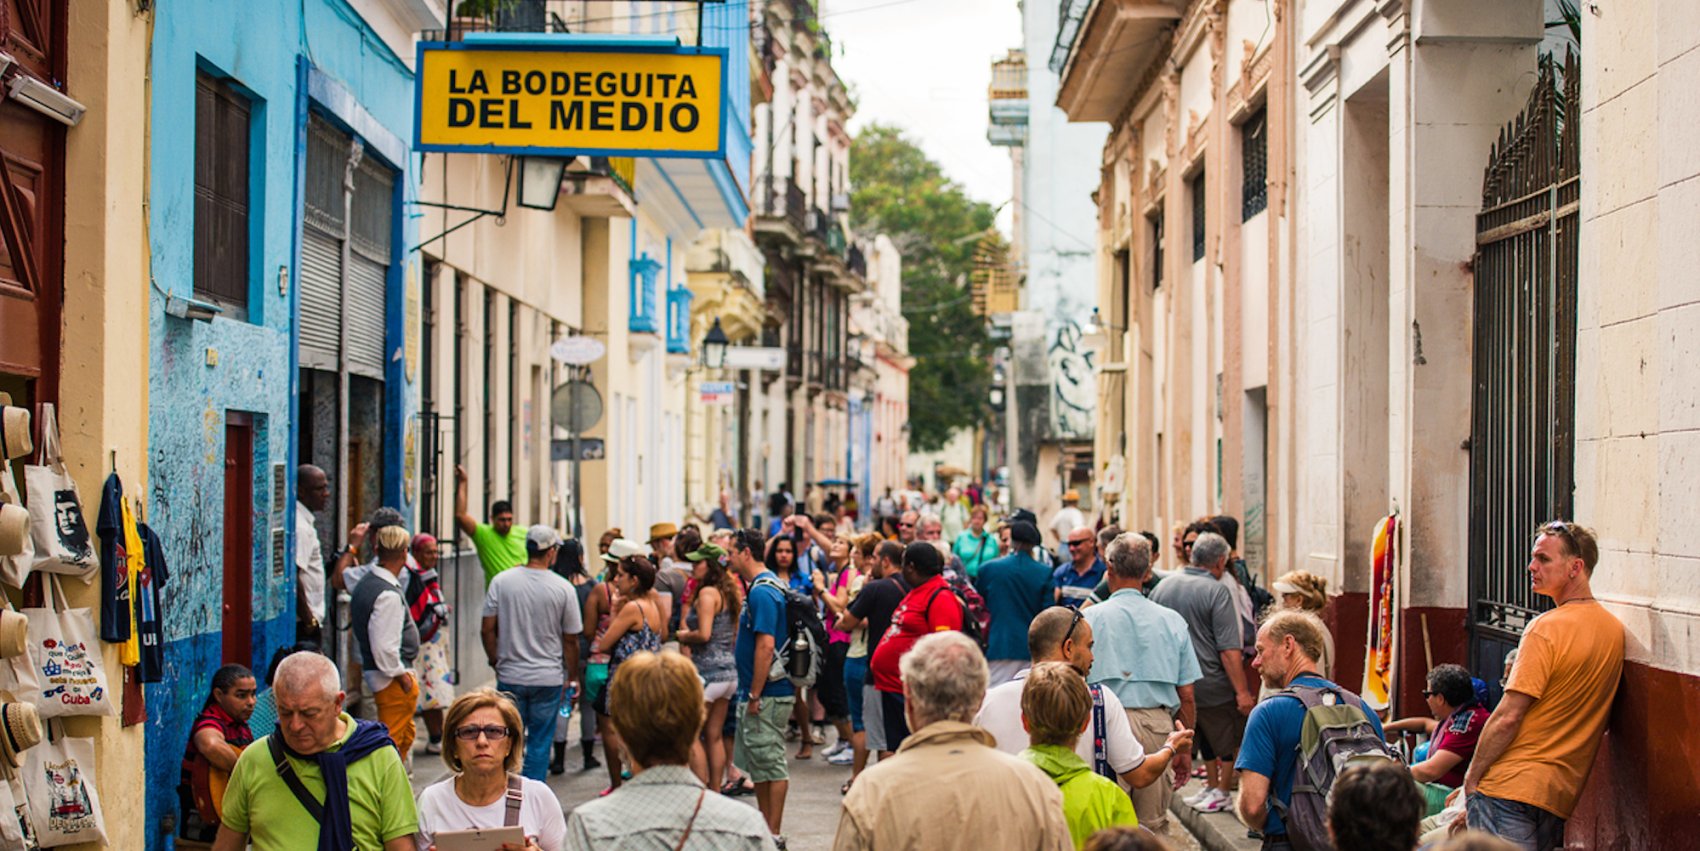 A street full of people walking in Old Havana, Cuba